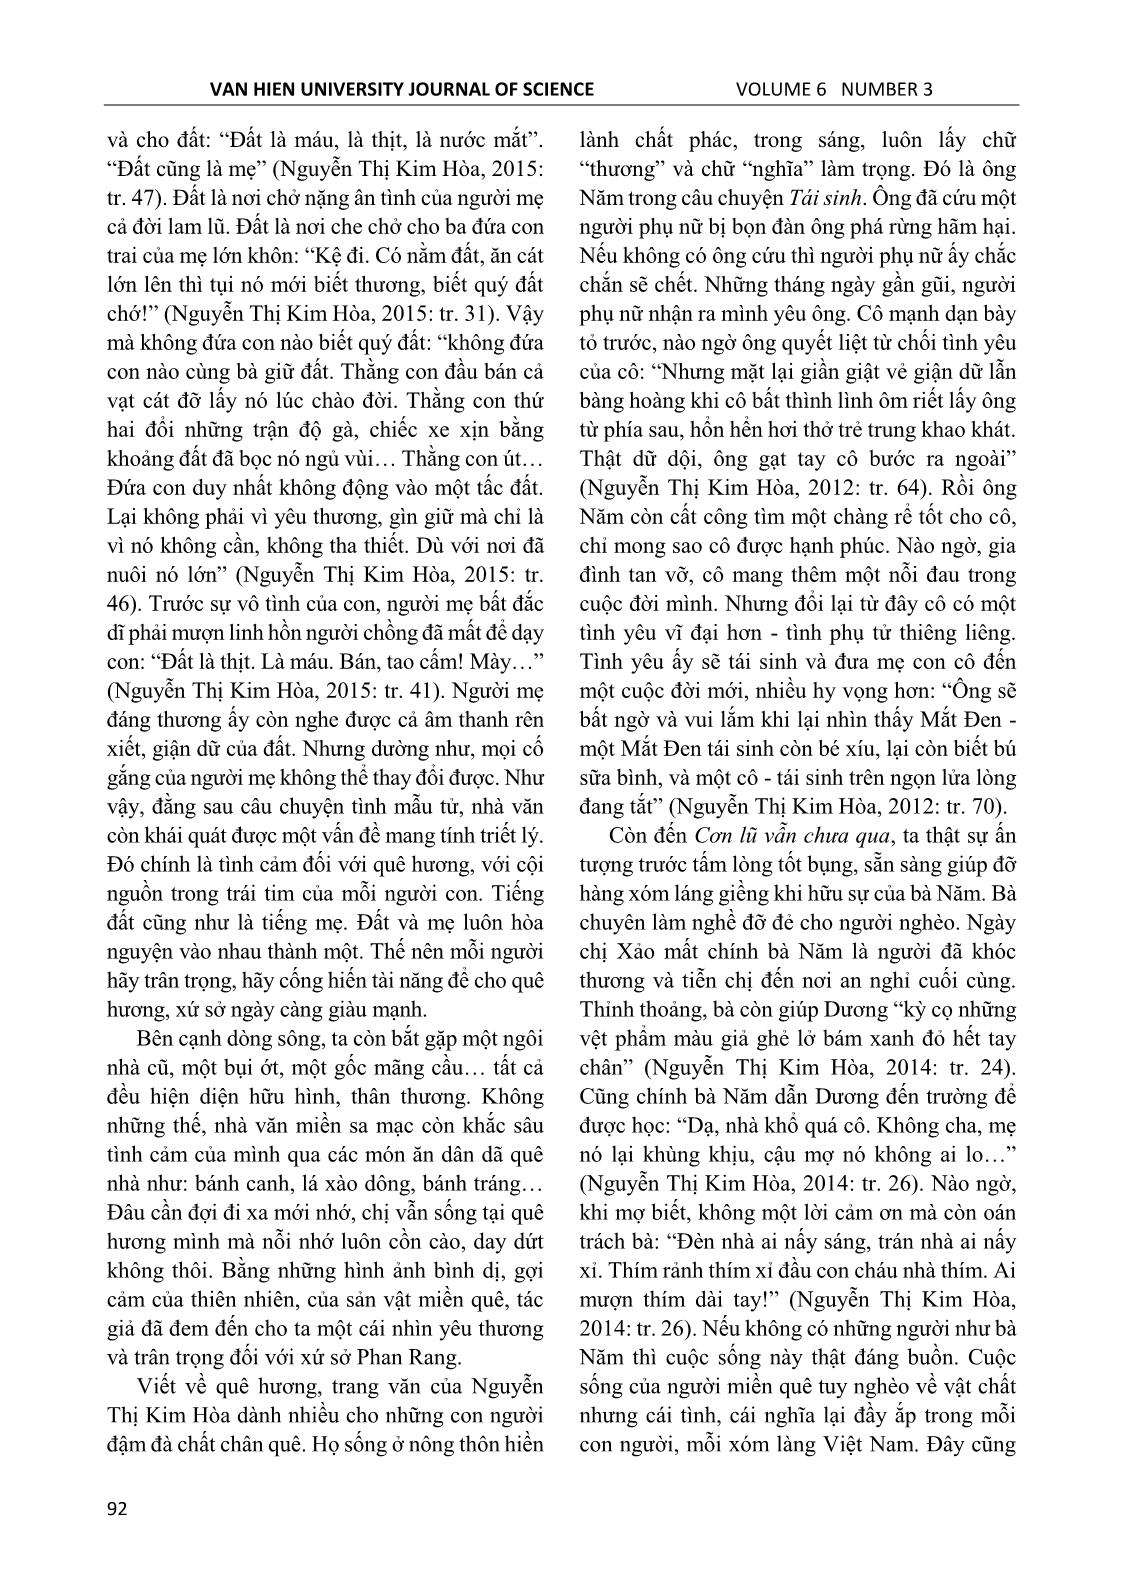 Cảm hứng nhân văn trong văn xuôi Nguyễn Thị Kim Hòa trang 5